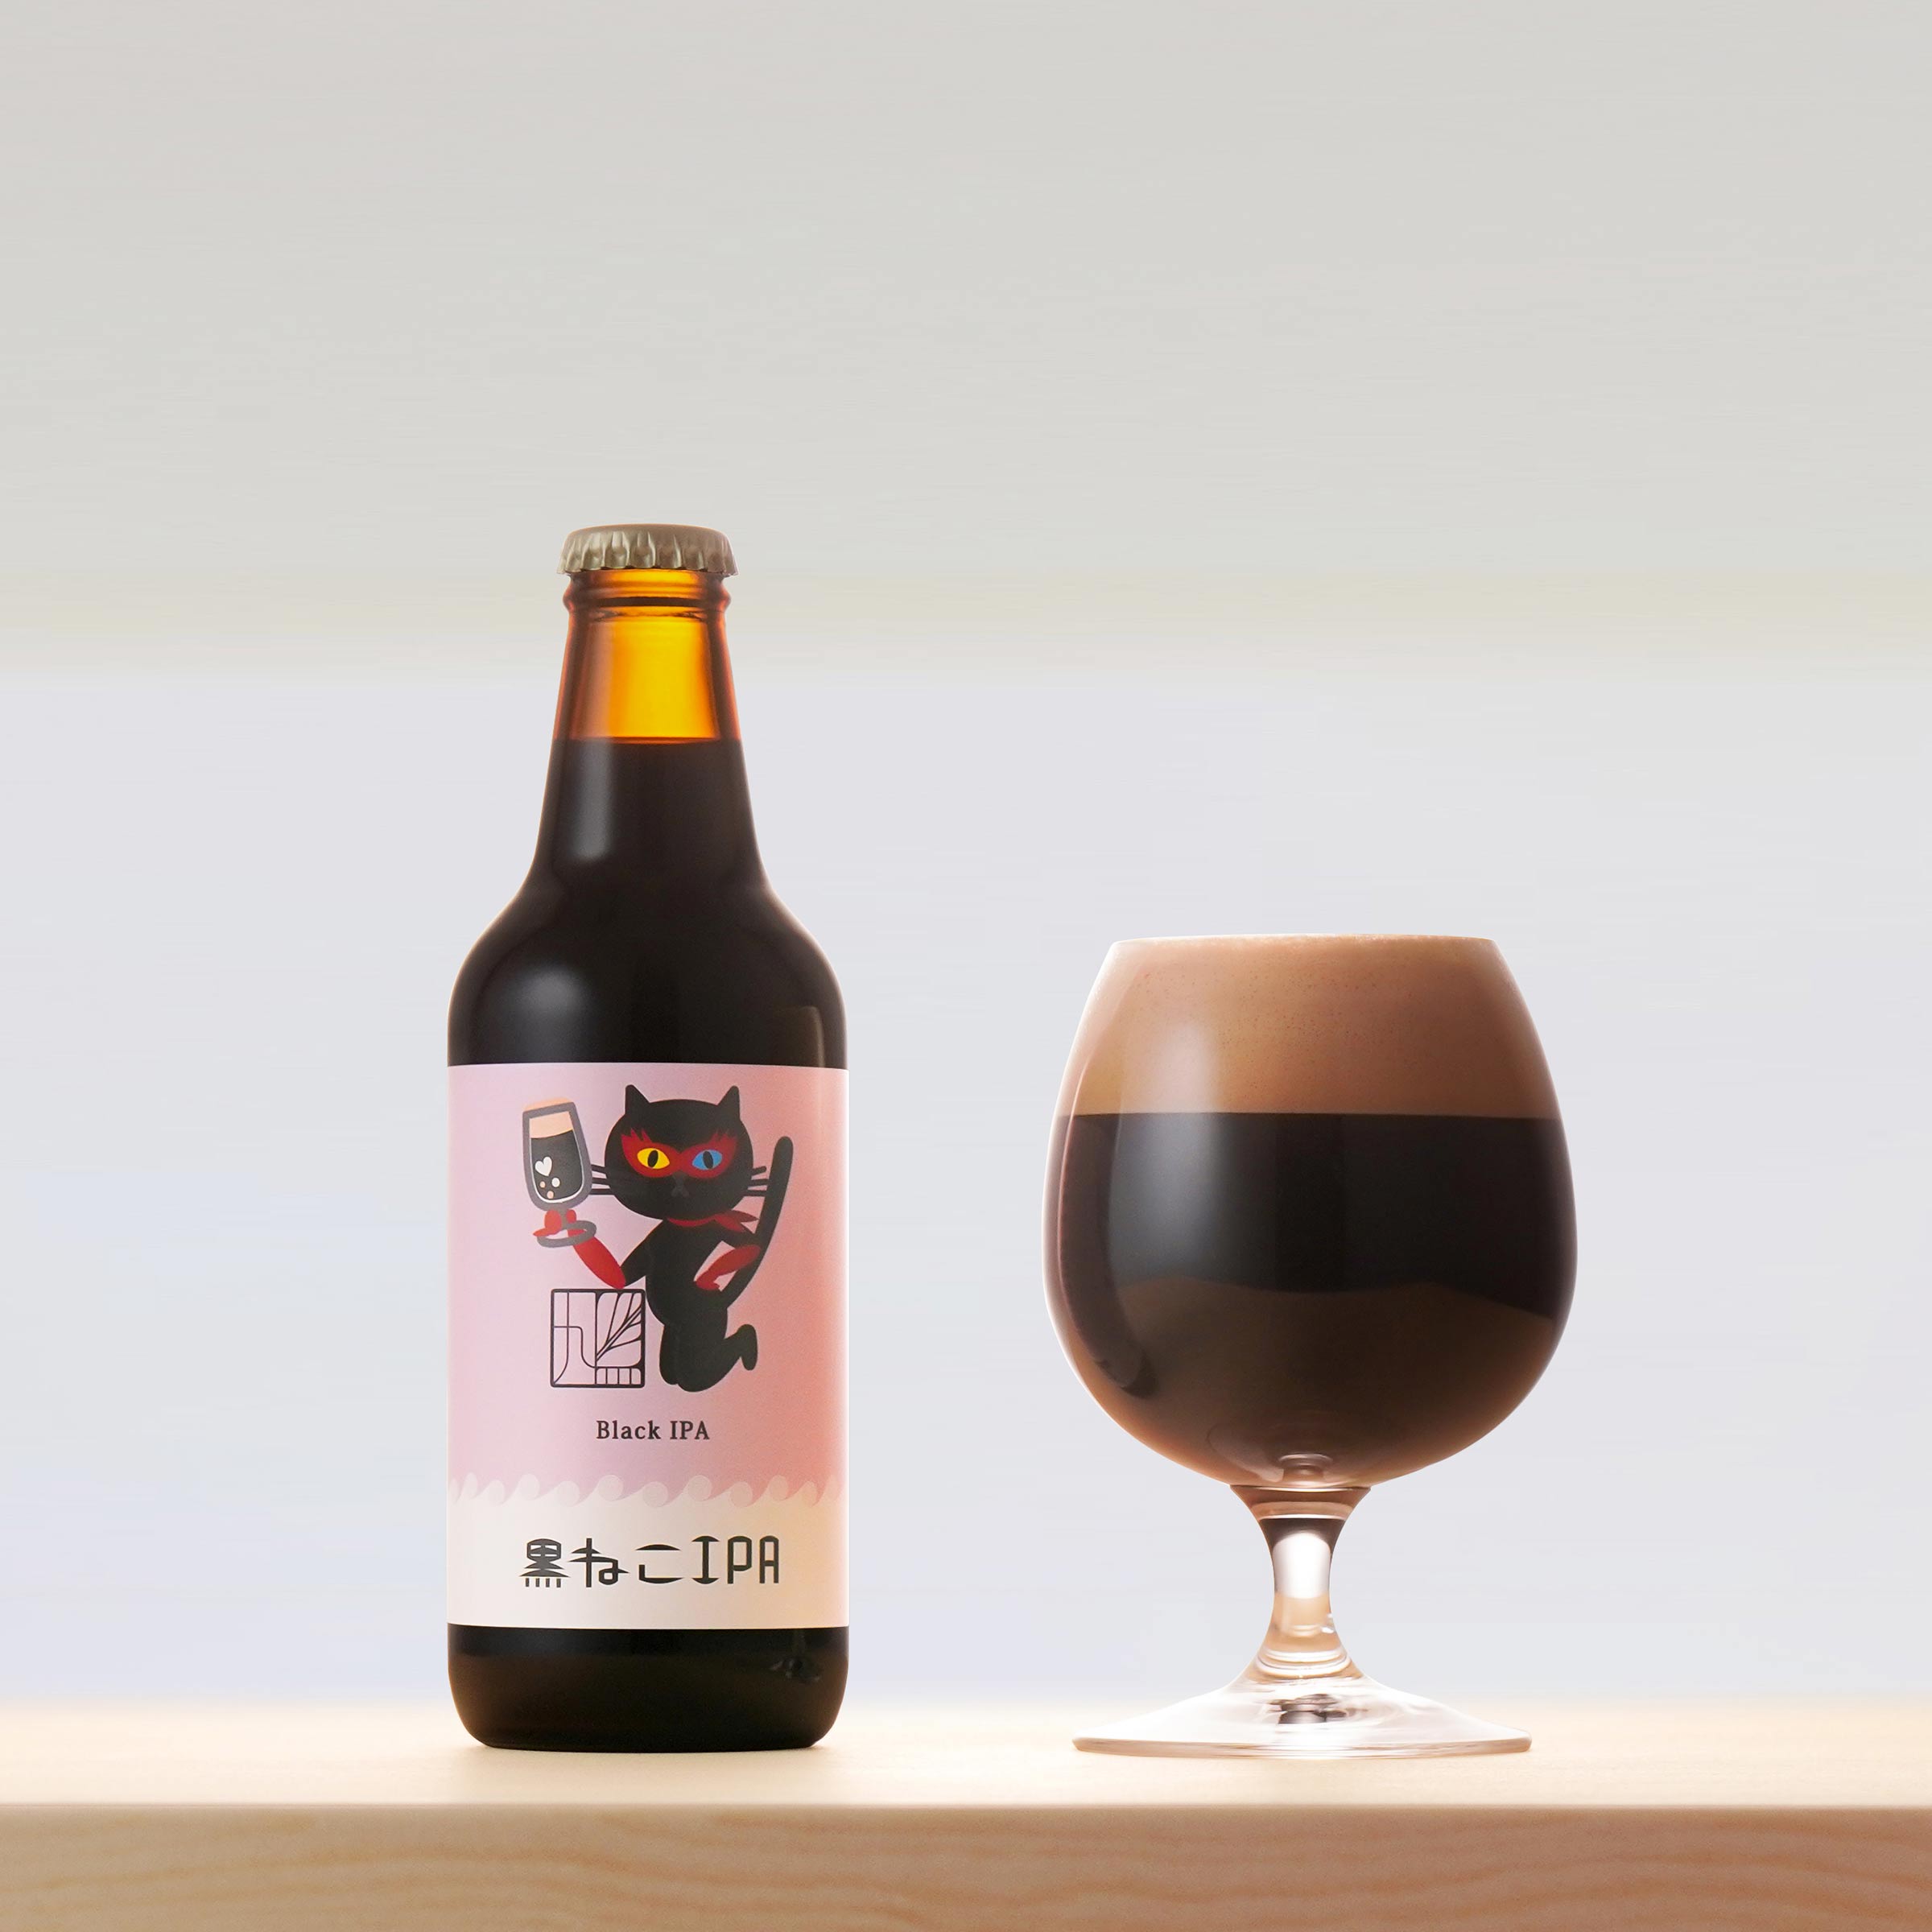 黒ねこIPAのビールボトルと、グラスに注いだビールの写真